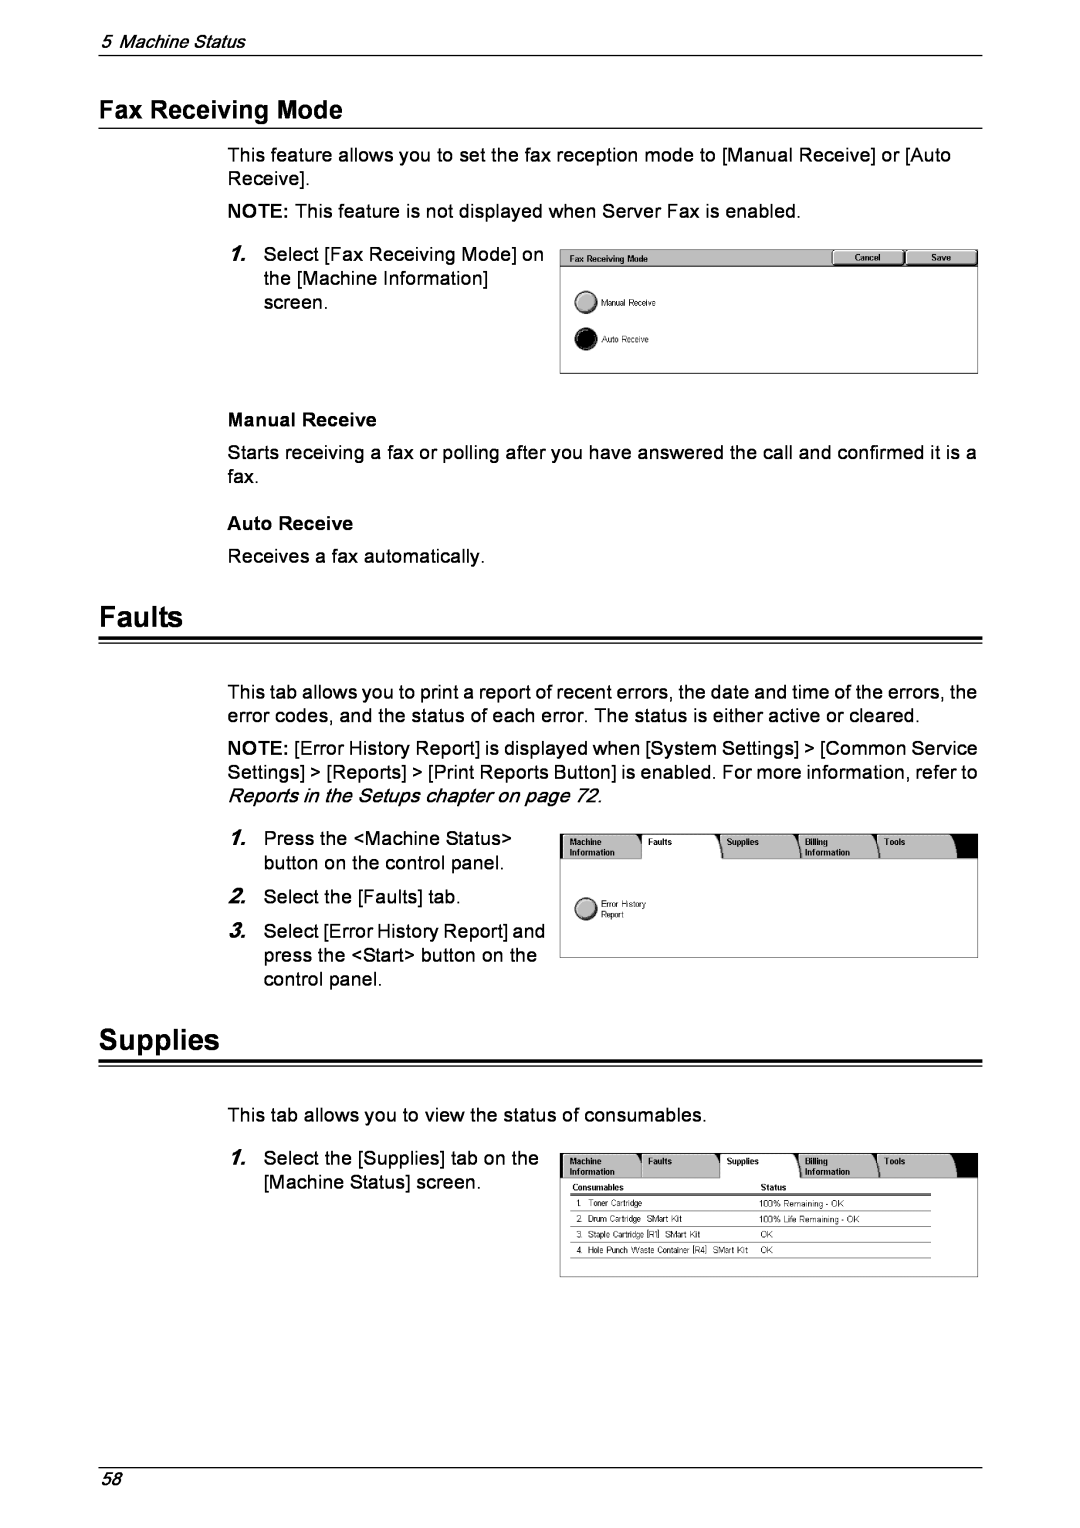 Xerox 5222 manual Faults, Supplies, Fax Receiving Mode, Manual Receive, Auto Receive 